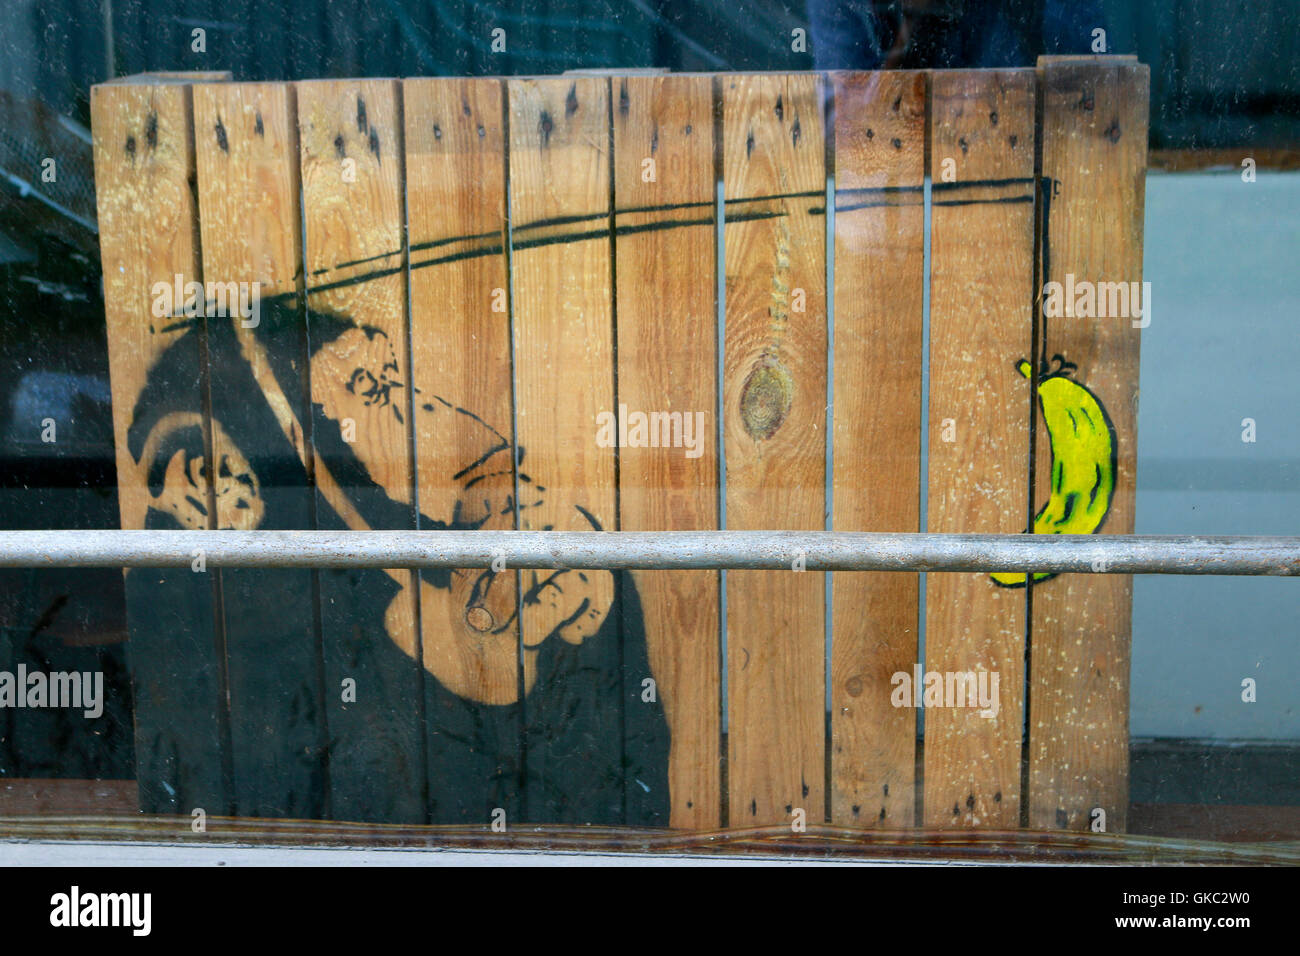 Street Art (wahrscheinlich von dem aus Stavanger kommenden Pobel) - Henningsvaer, Lofoten, Norwegen. Stock Photo